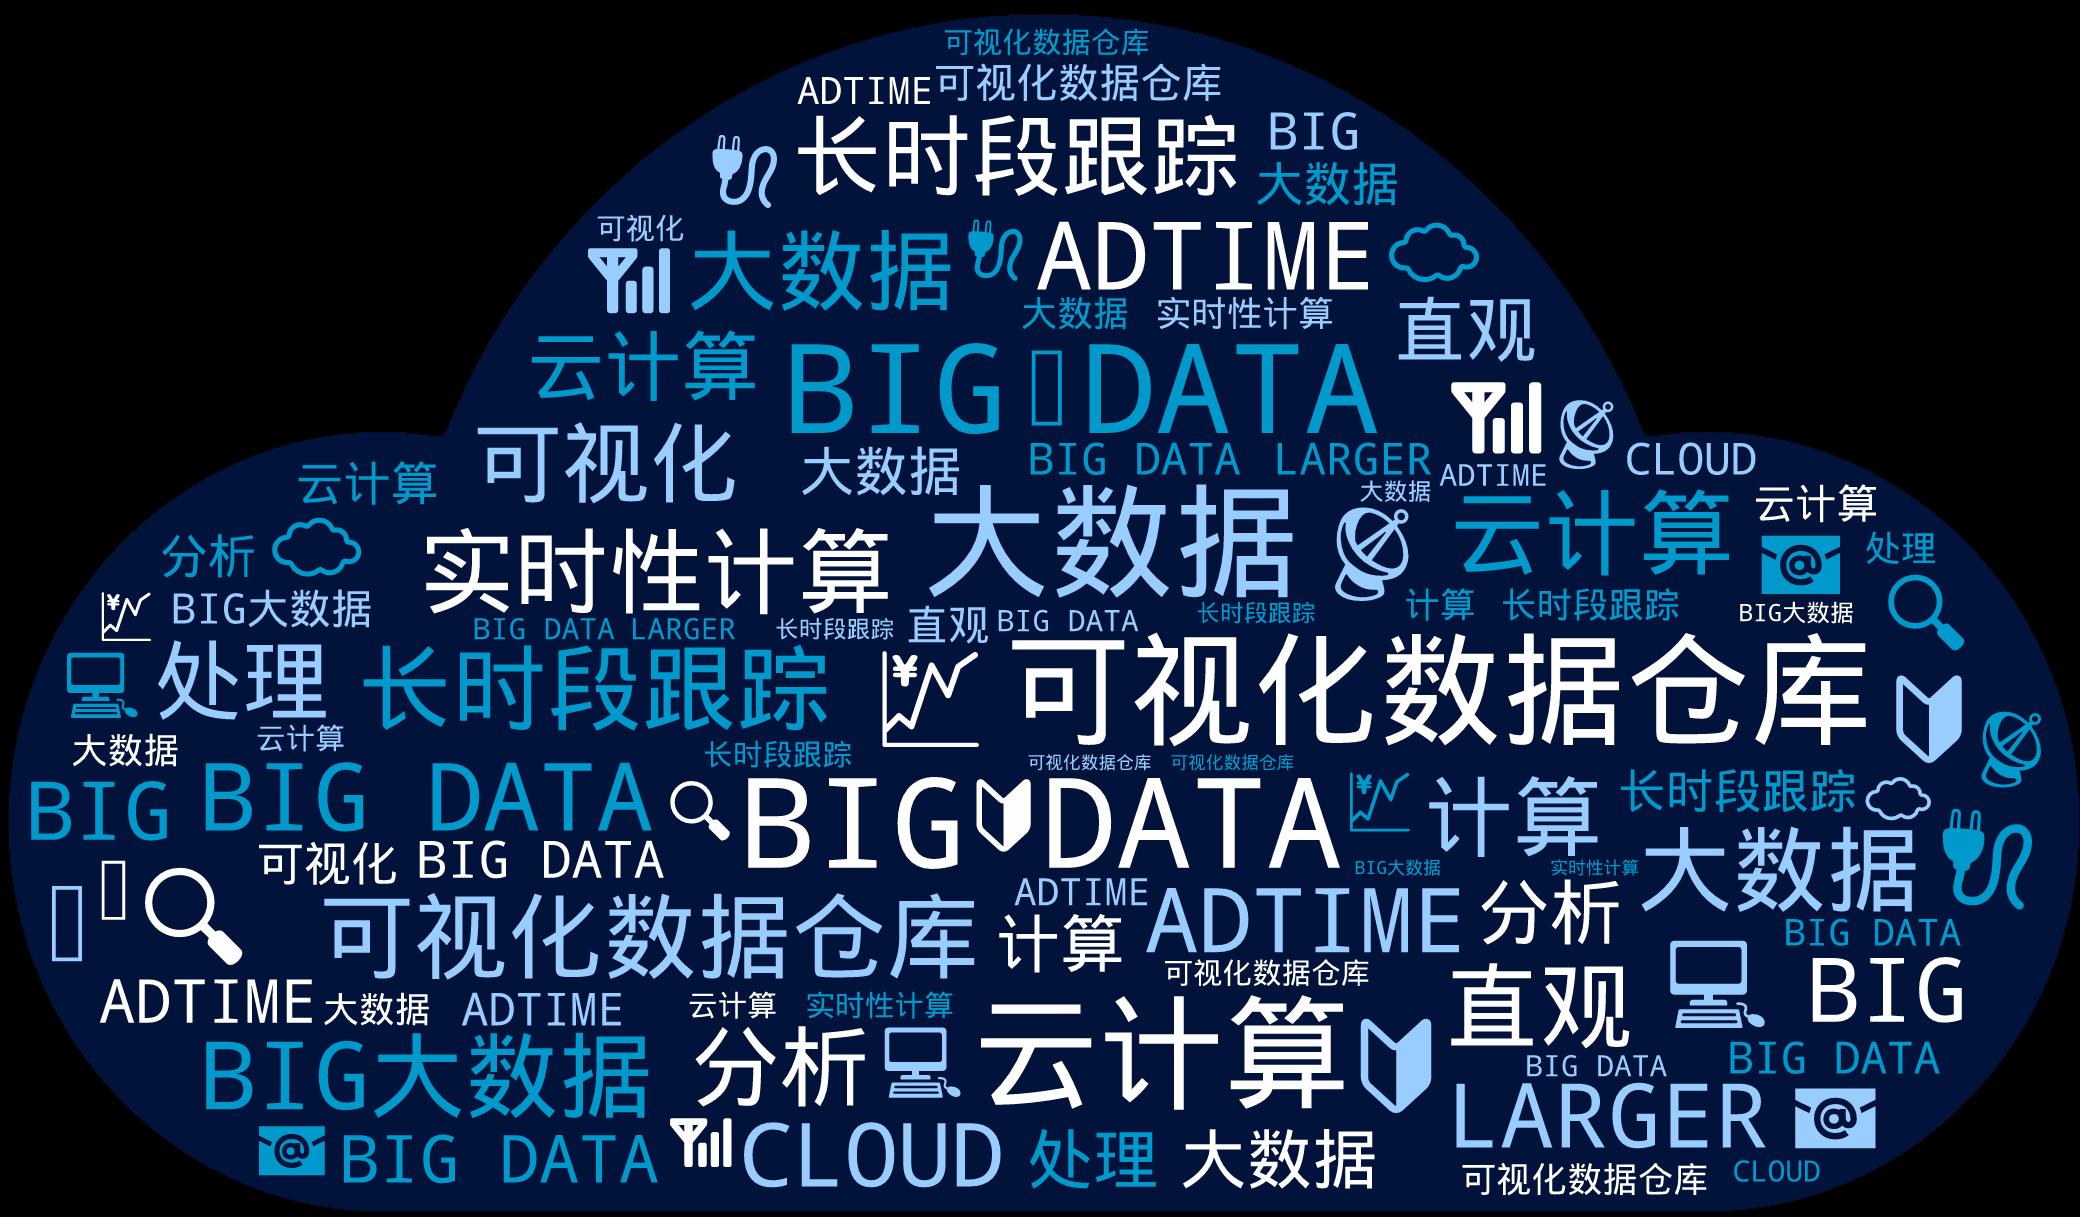 词云图,文字云图,BIG DATA,大数据,云计算,可视化数据仓库,BIG DATA,可视化数据仓库,长时段跟踪,ADTIME,BIG大数据,实时性计算